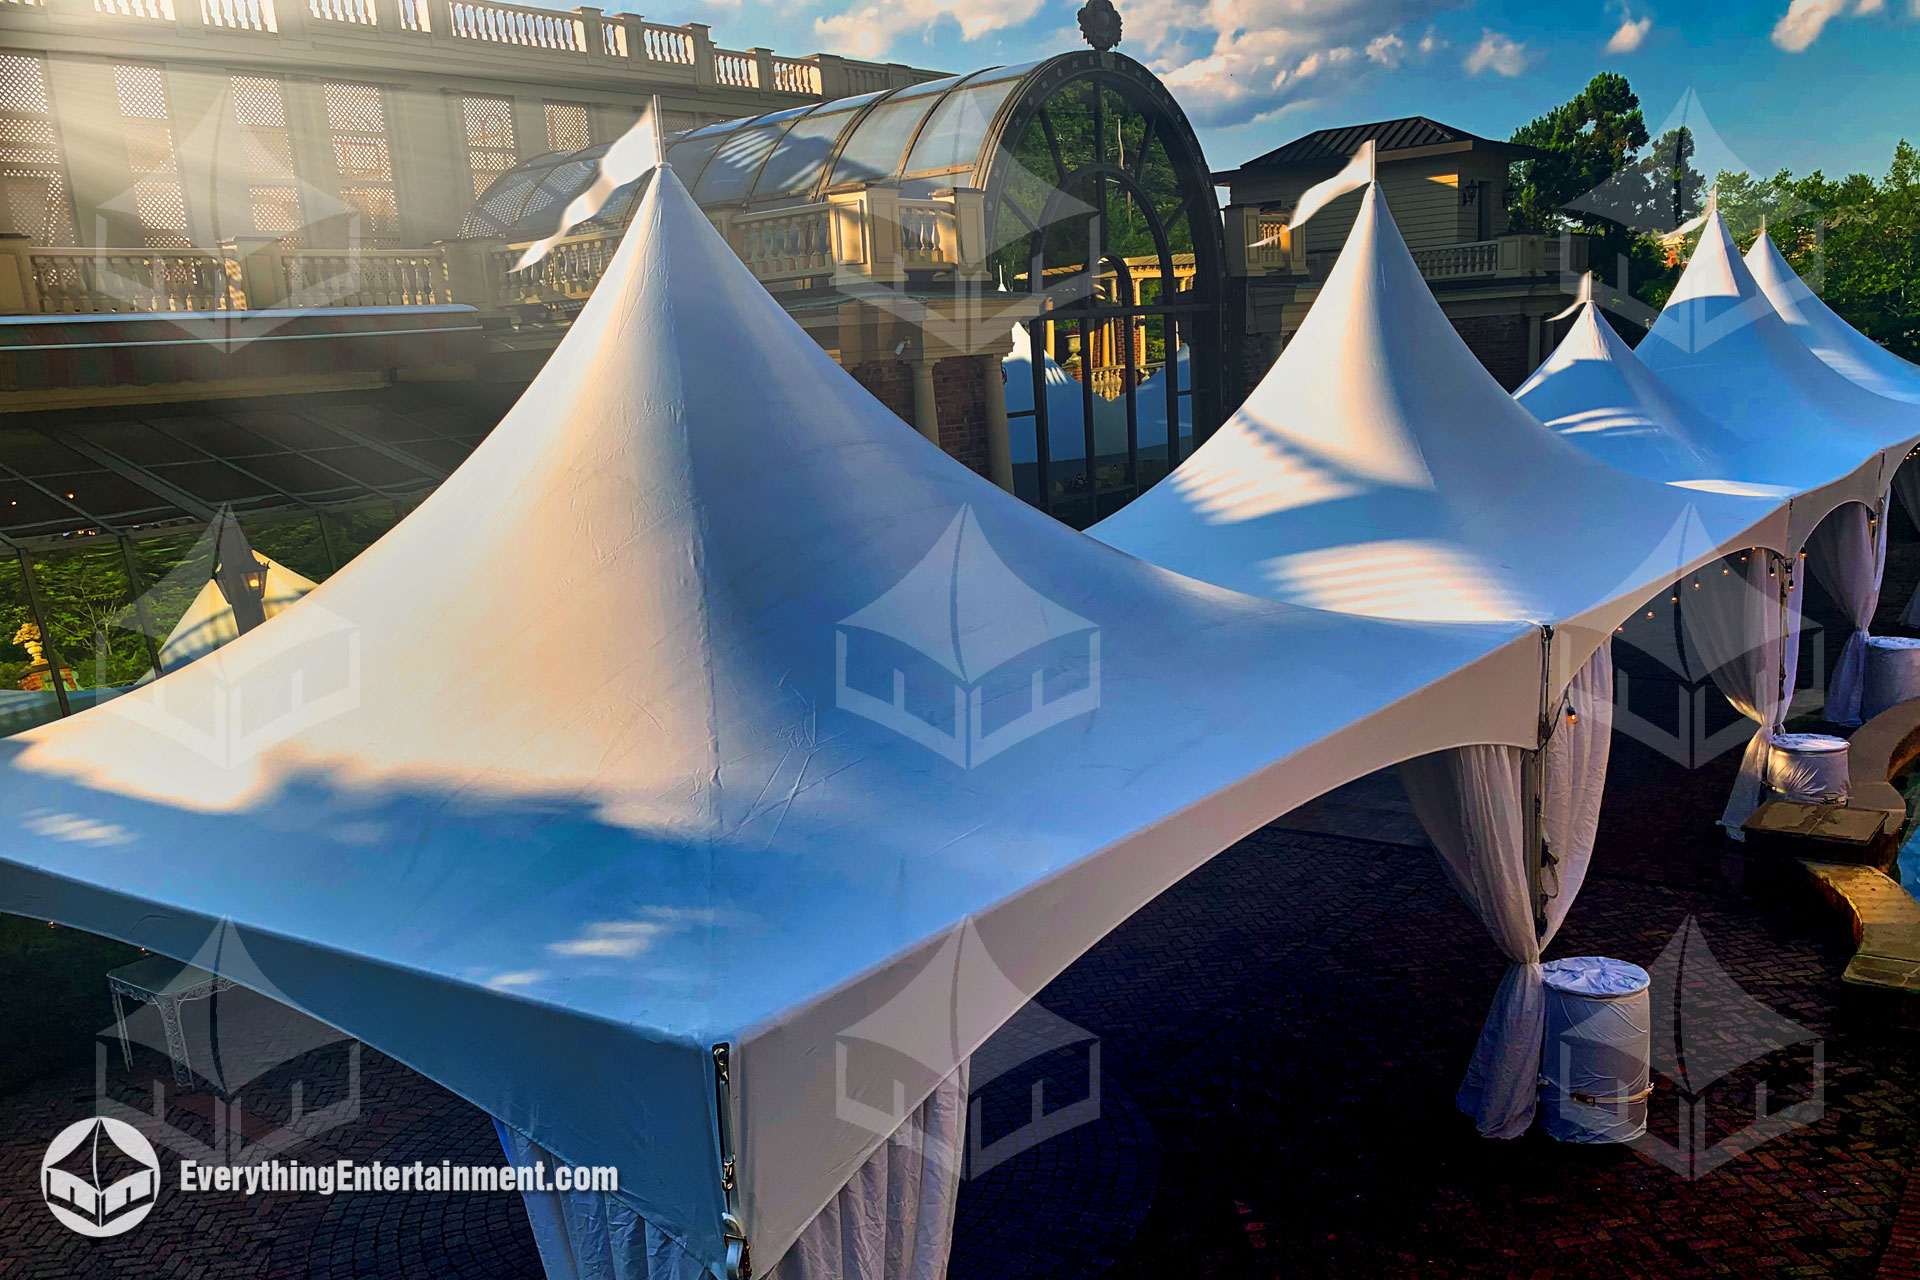 five high peak tents at a wedding venue